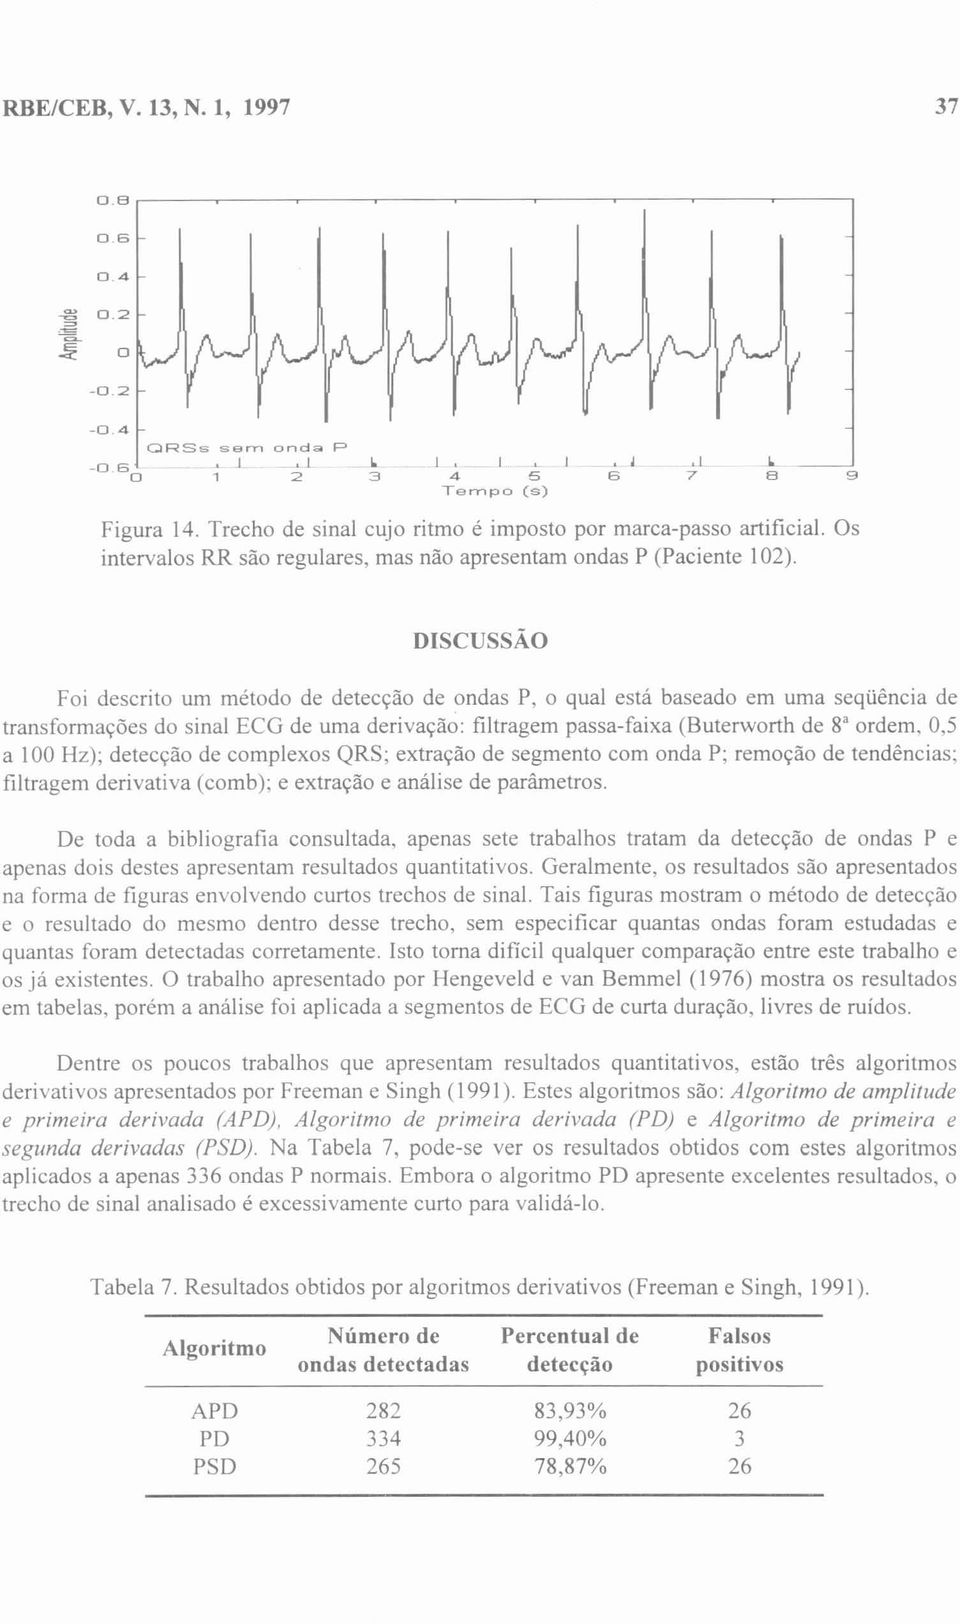 DISCUSSÃO Foi descrito um método de detecção de ondas P, o qual está baseado em uma seqüência de transformações do sinal ECG de uma derivação: filtragem passa-faixa (Buterworth de 8' ordem, 0,5 a 100